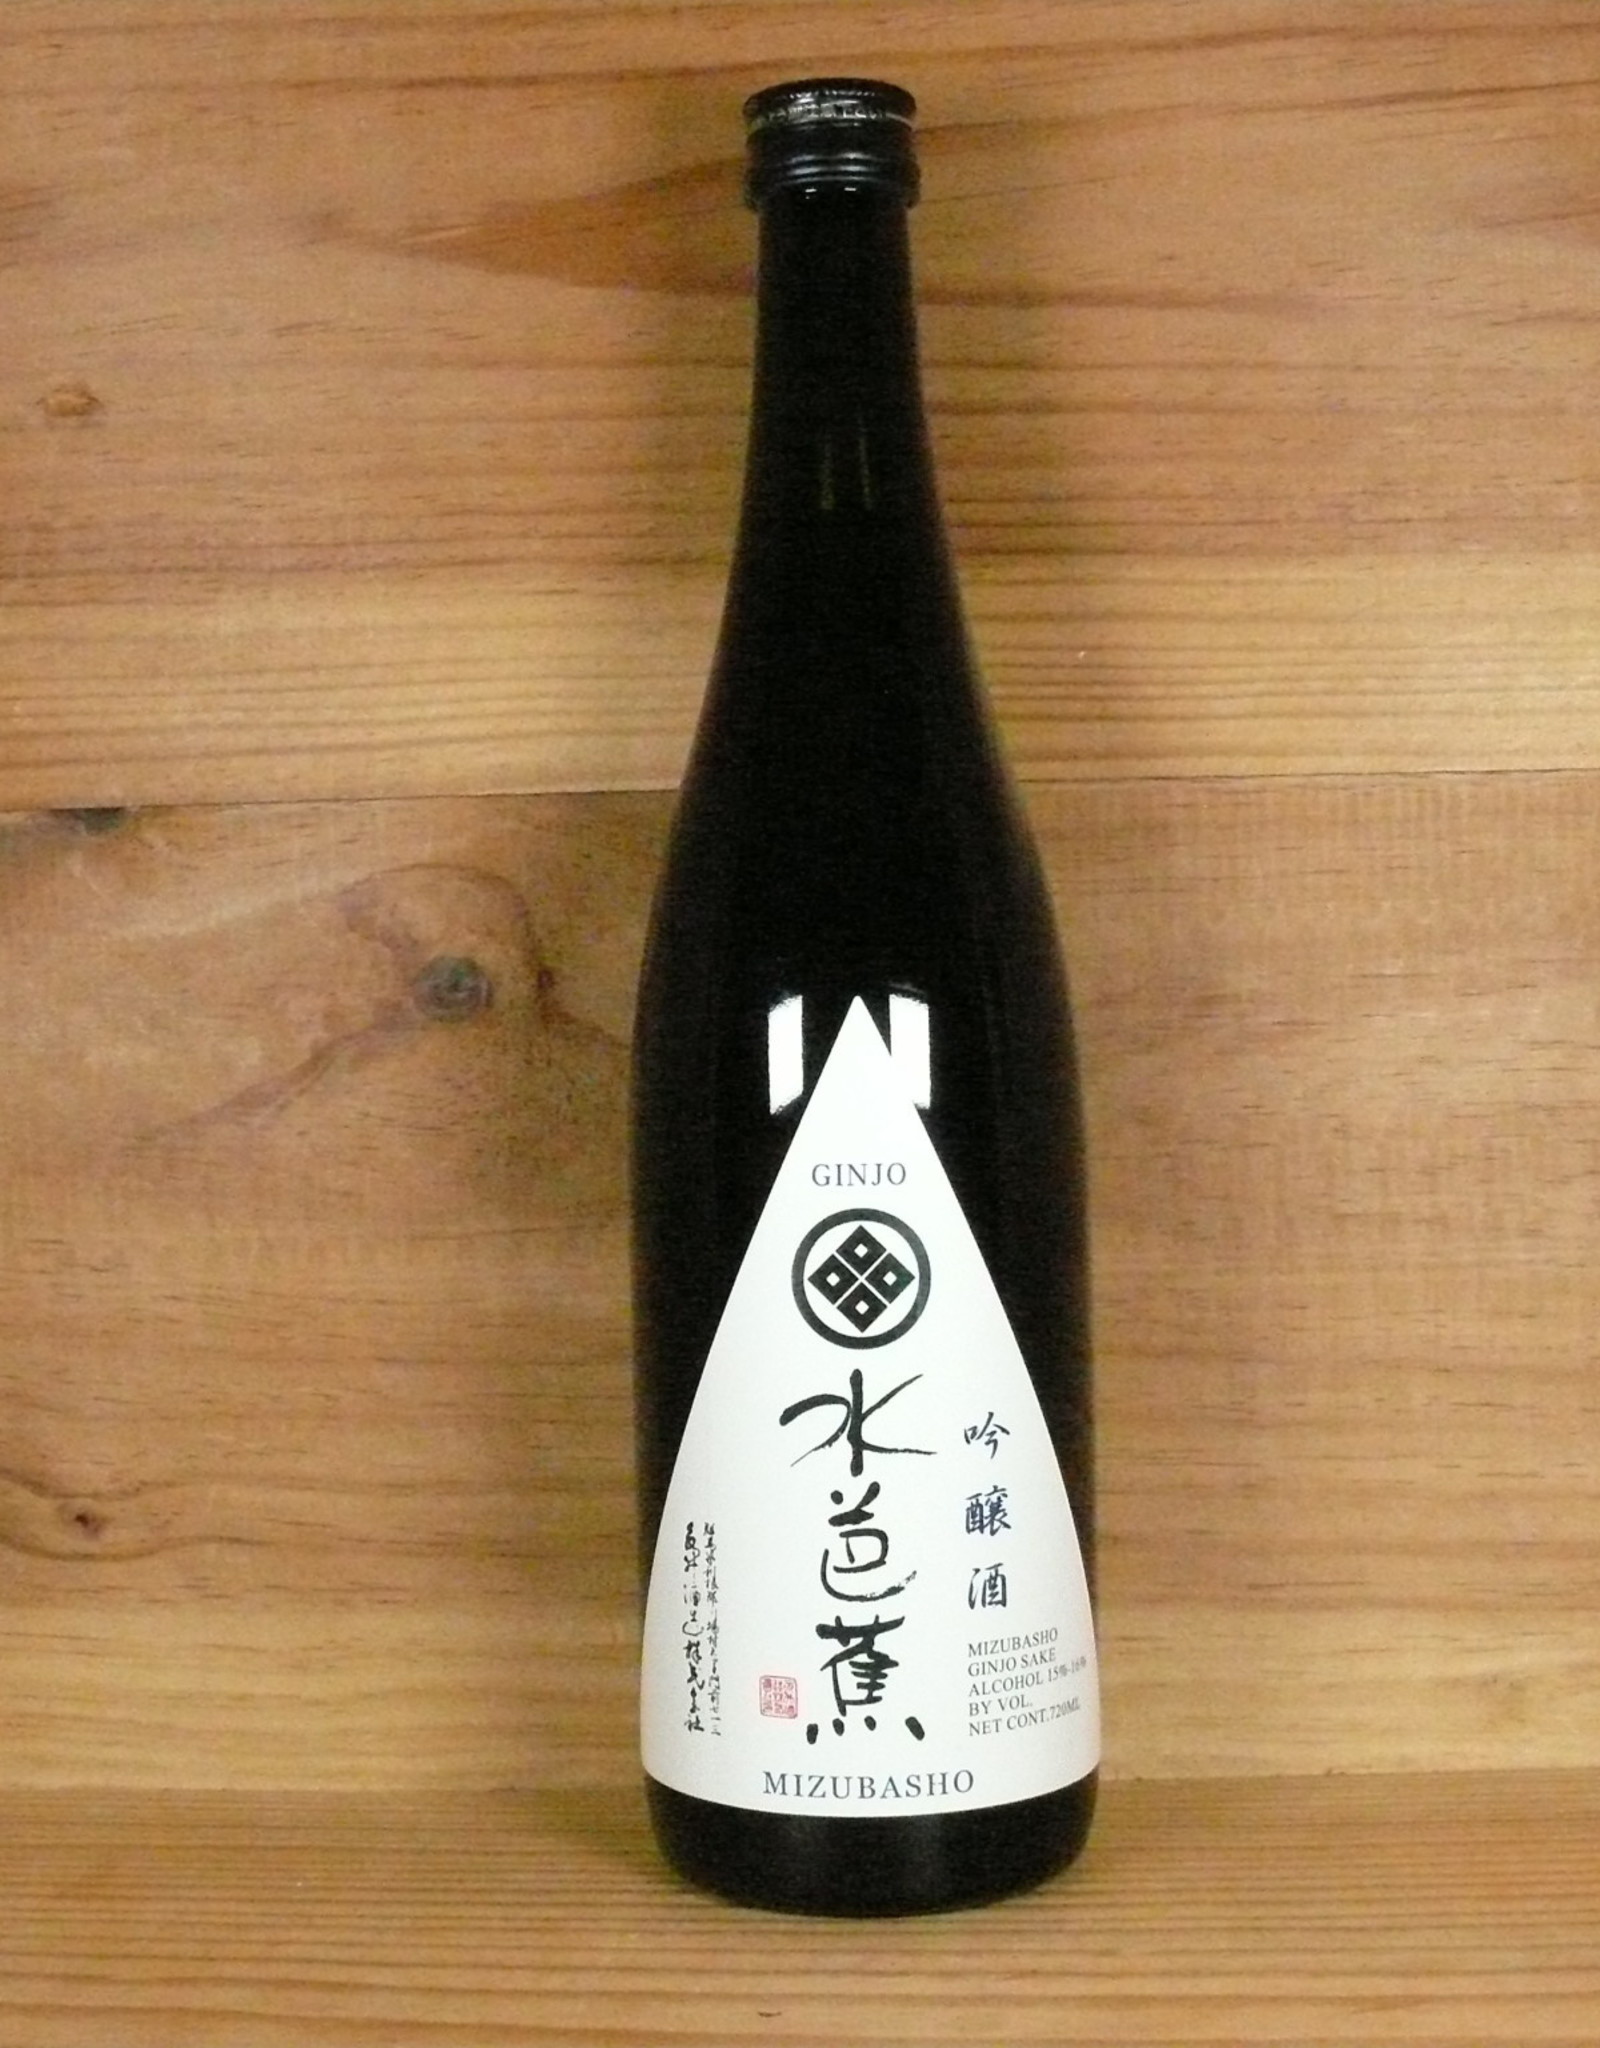 Nagai Shuzo "Mizubasho" Ginjo sake